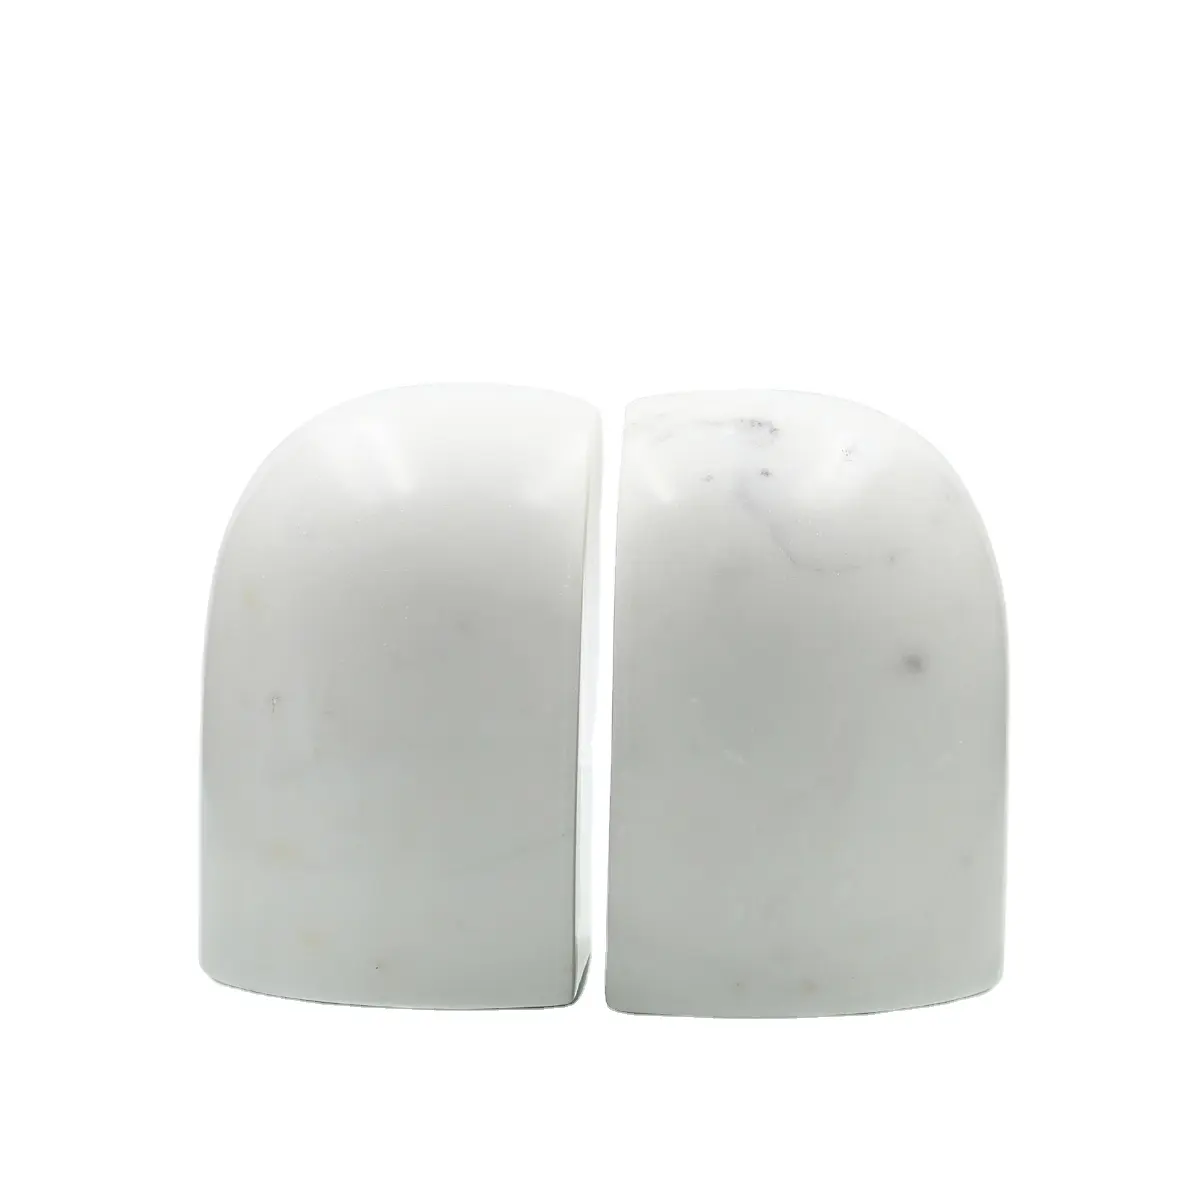 2024 articolo in pietra artigianale esclusivo Premium in marmo bianco che aumenta la bellezza dei tuoi scaffali